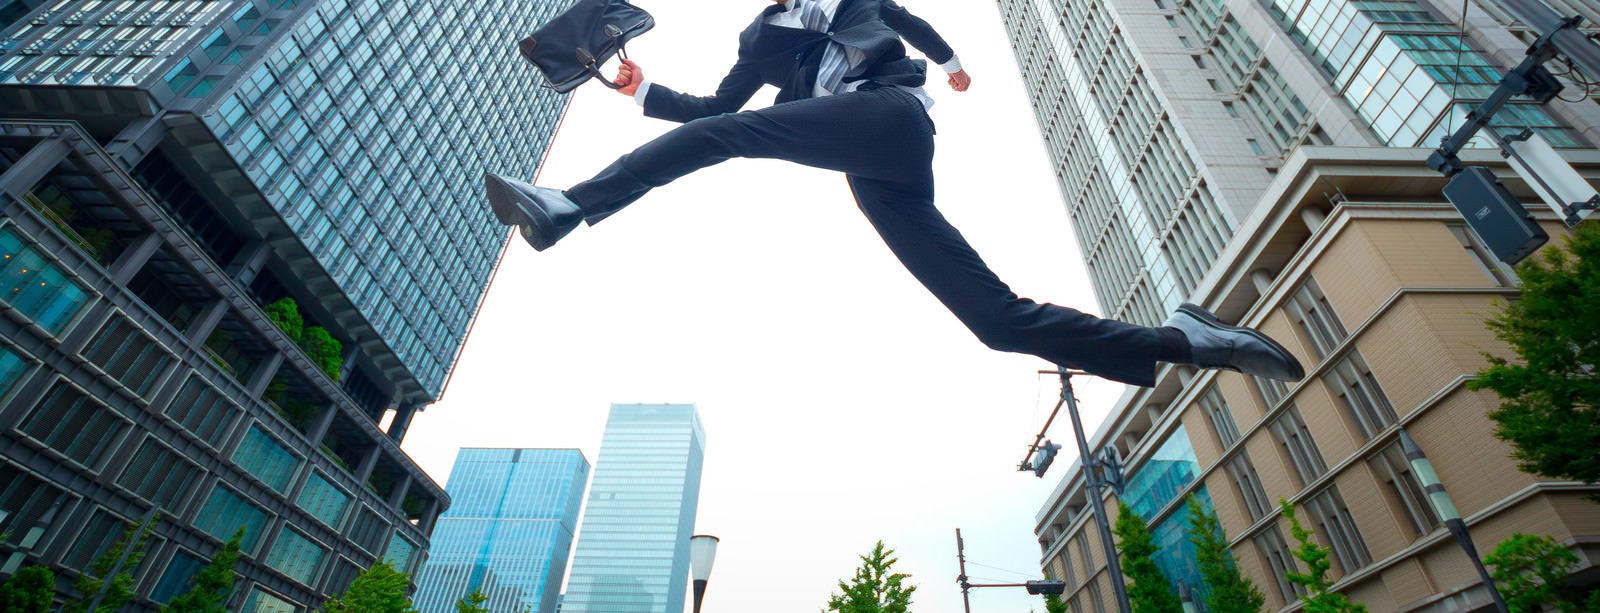 「ジャンプするビジネスマン」の写真